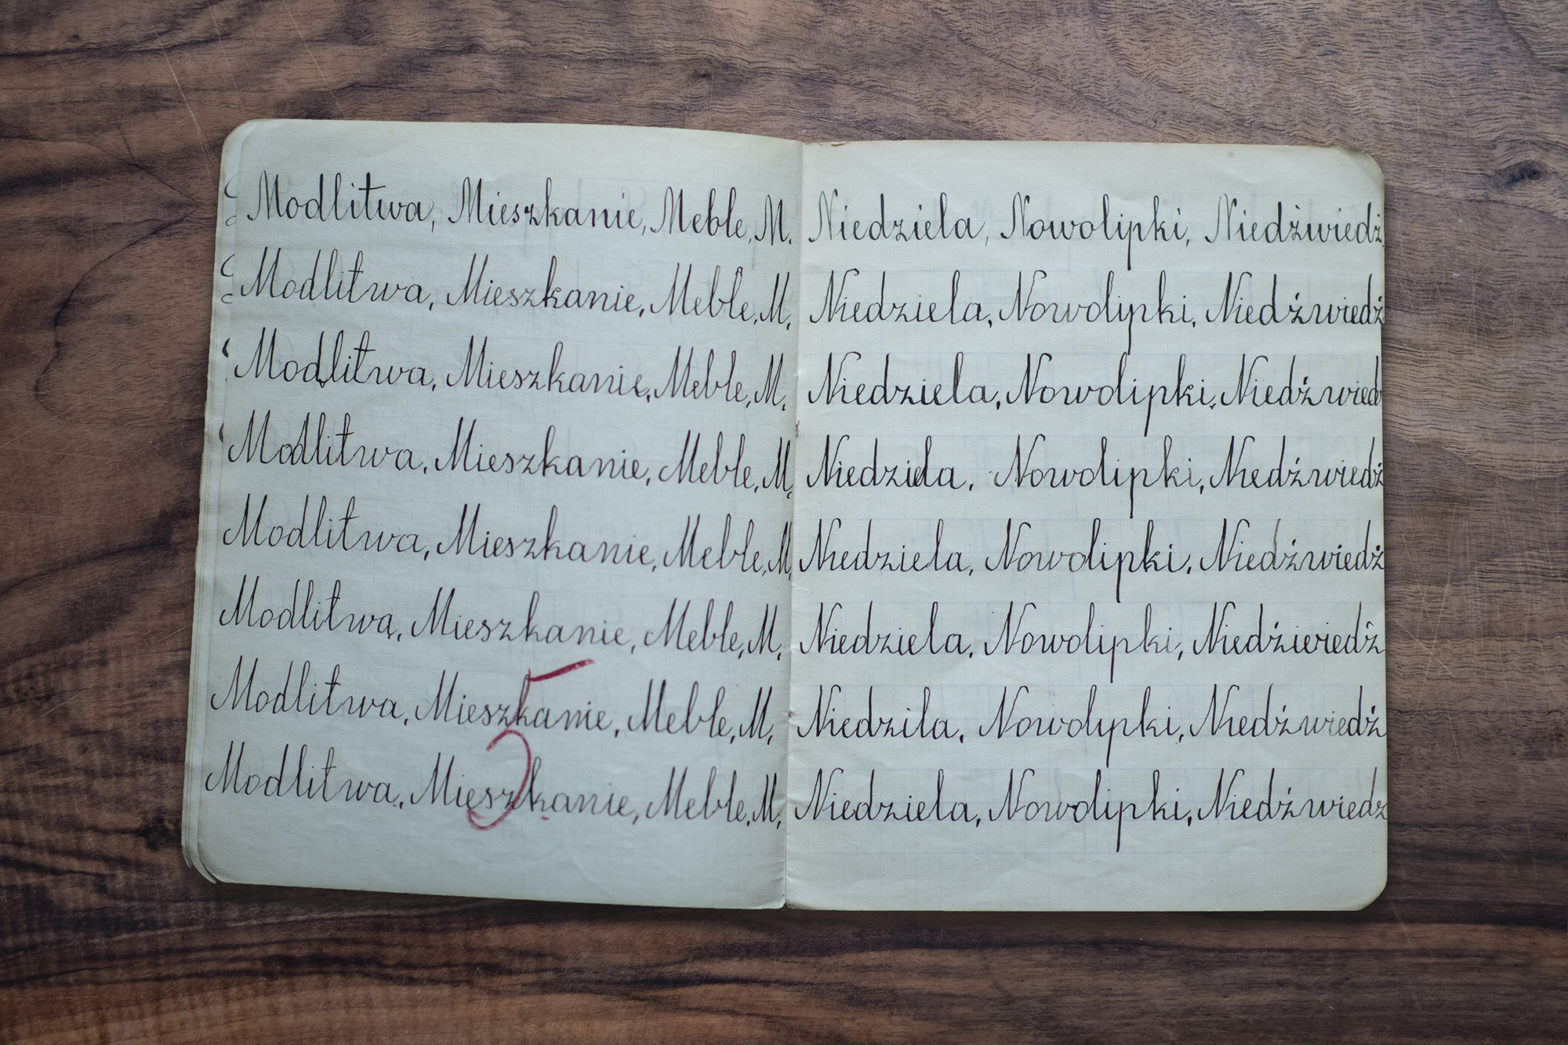 Otwarty zeszyt, w którym w każdej linijce zapisane są takie same wyrazy - ćwiczenie kaligrafii. Na dole strony znajduje się ocena: "pięć", zapisana czerwonym długopisem.